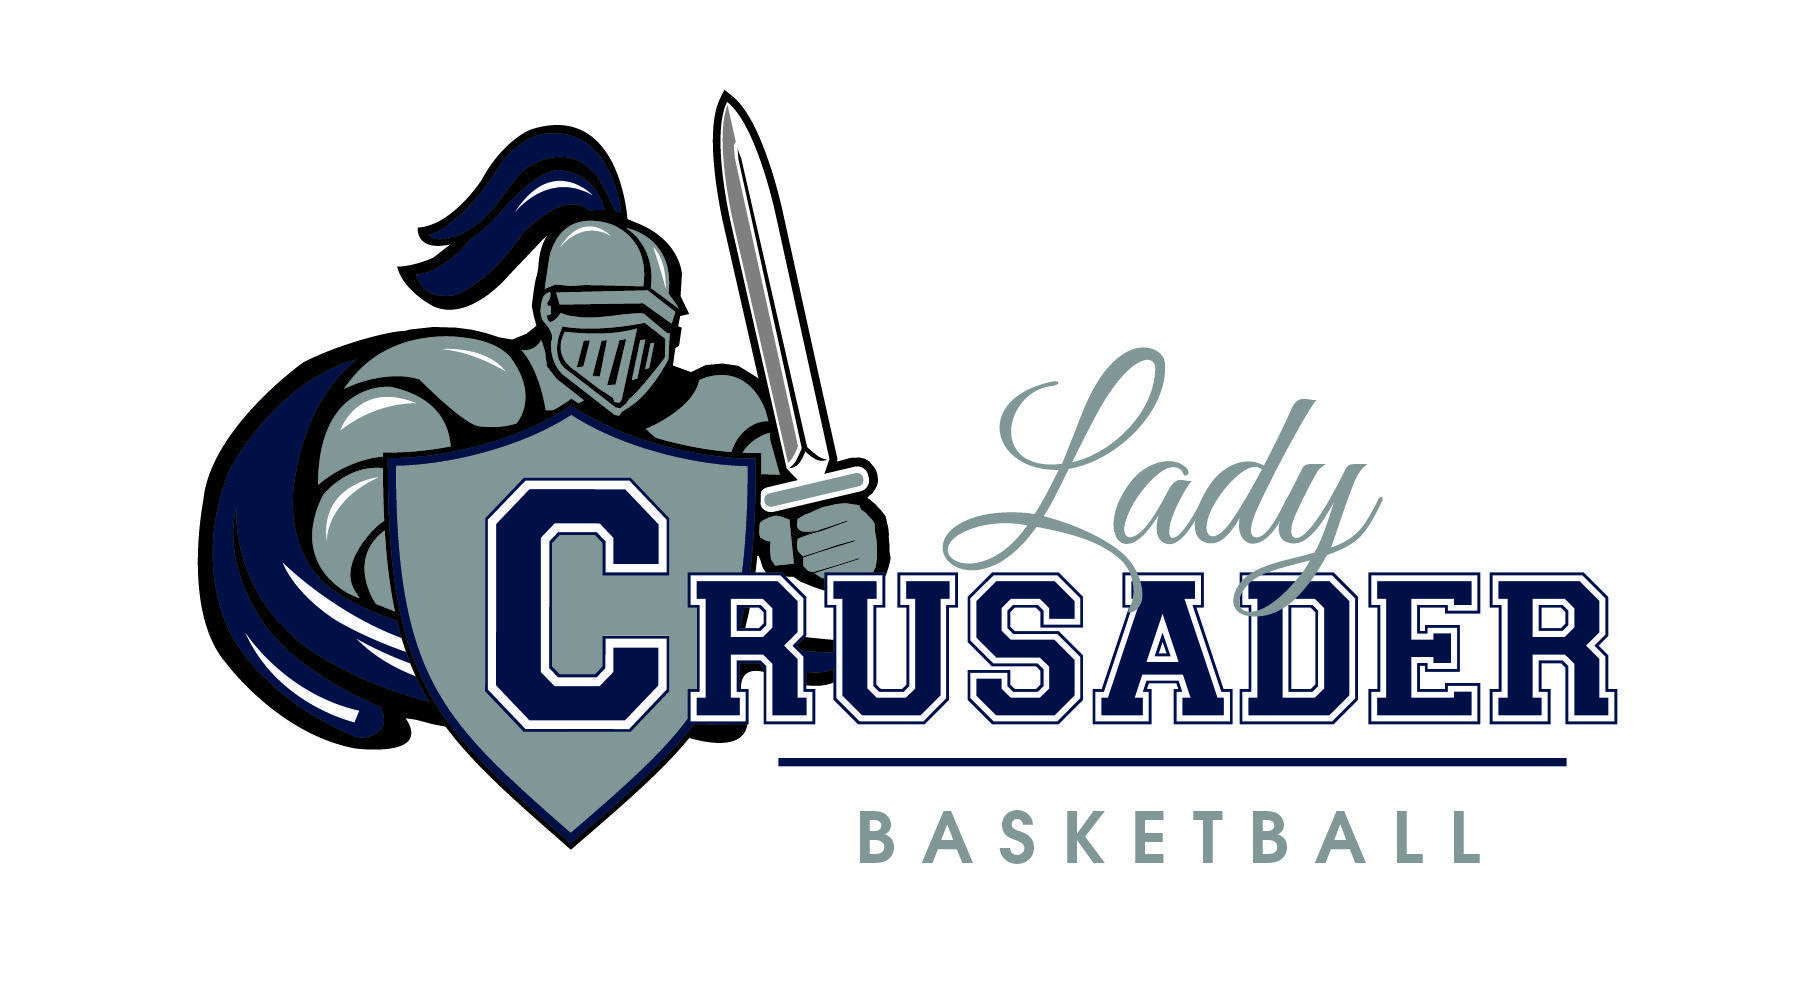 Crusaders Basketball Logo - Crusader Girls' Basketball defeats 2nd Baptist - Page 6 of 8 ...